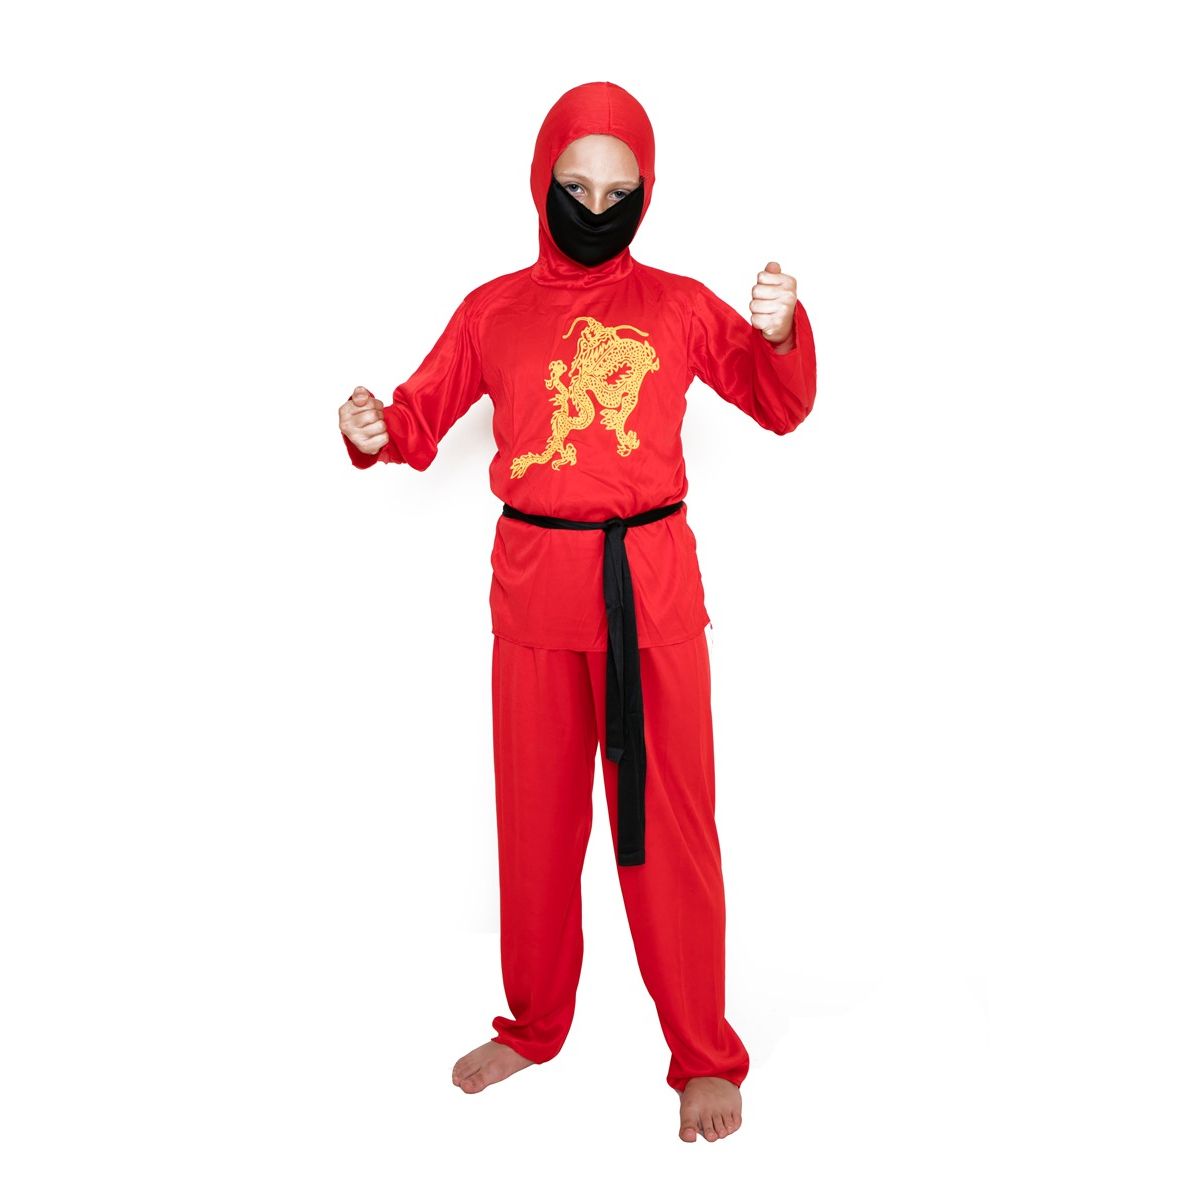 Kostium dziecięcy - Czerwony ninja - rozmiar S Arpex (SD2609-S-7110)